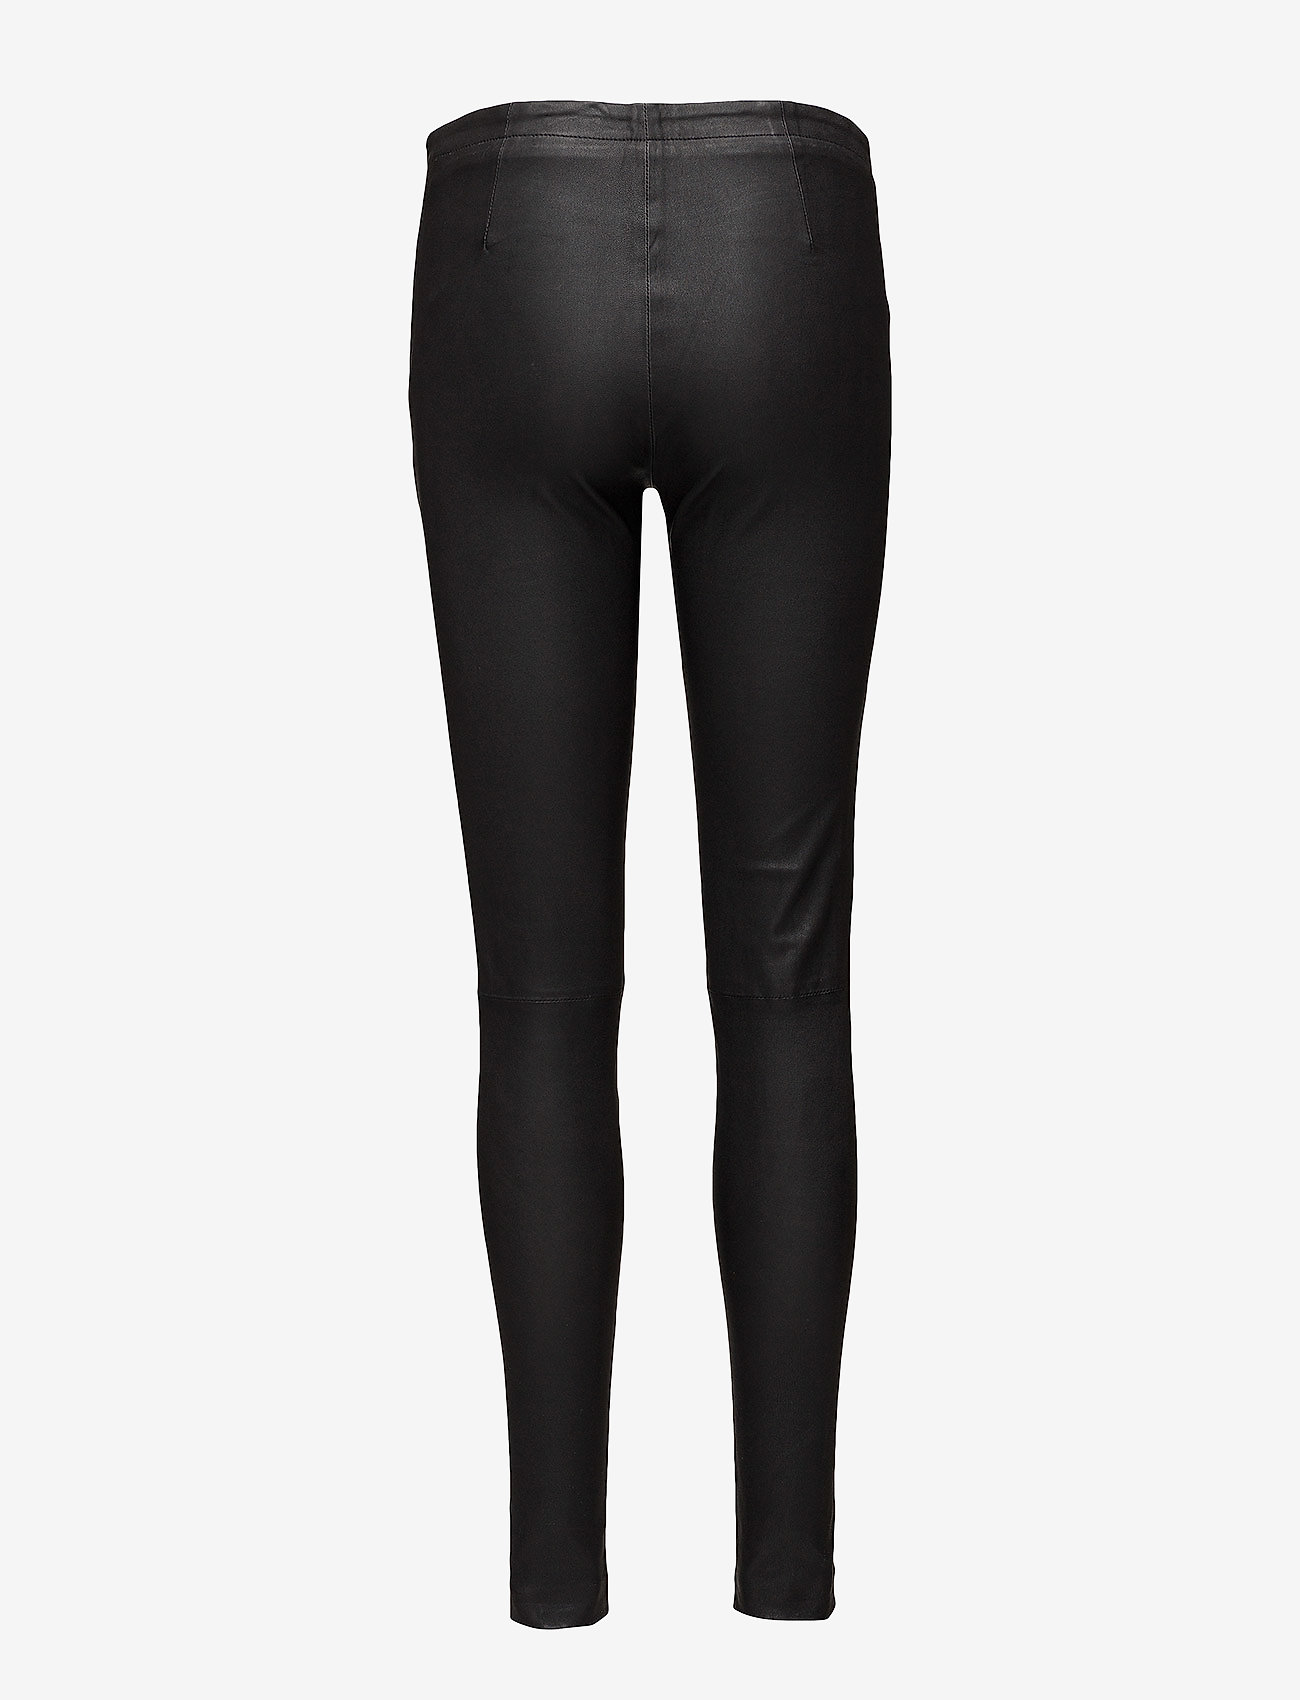 Rosemunde - Leather trousers - odinės kelnės - black - 1